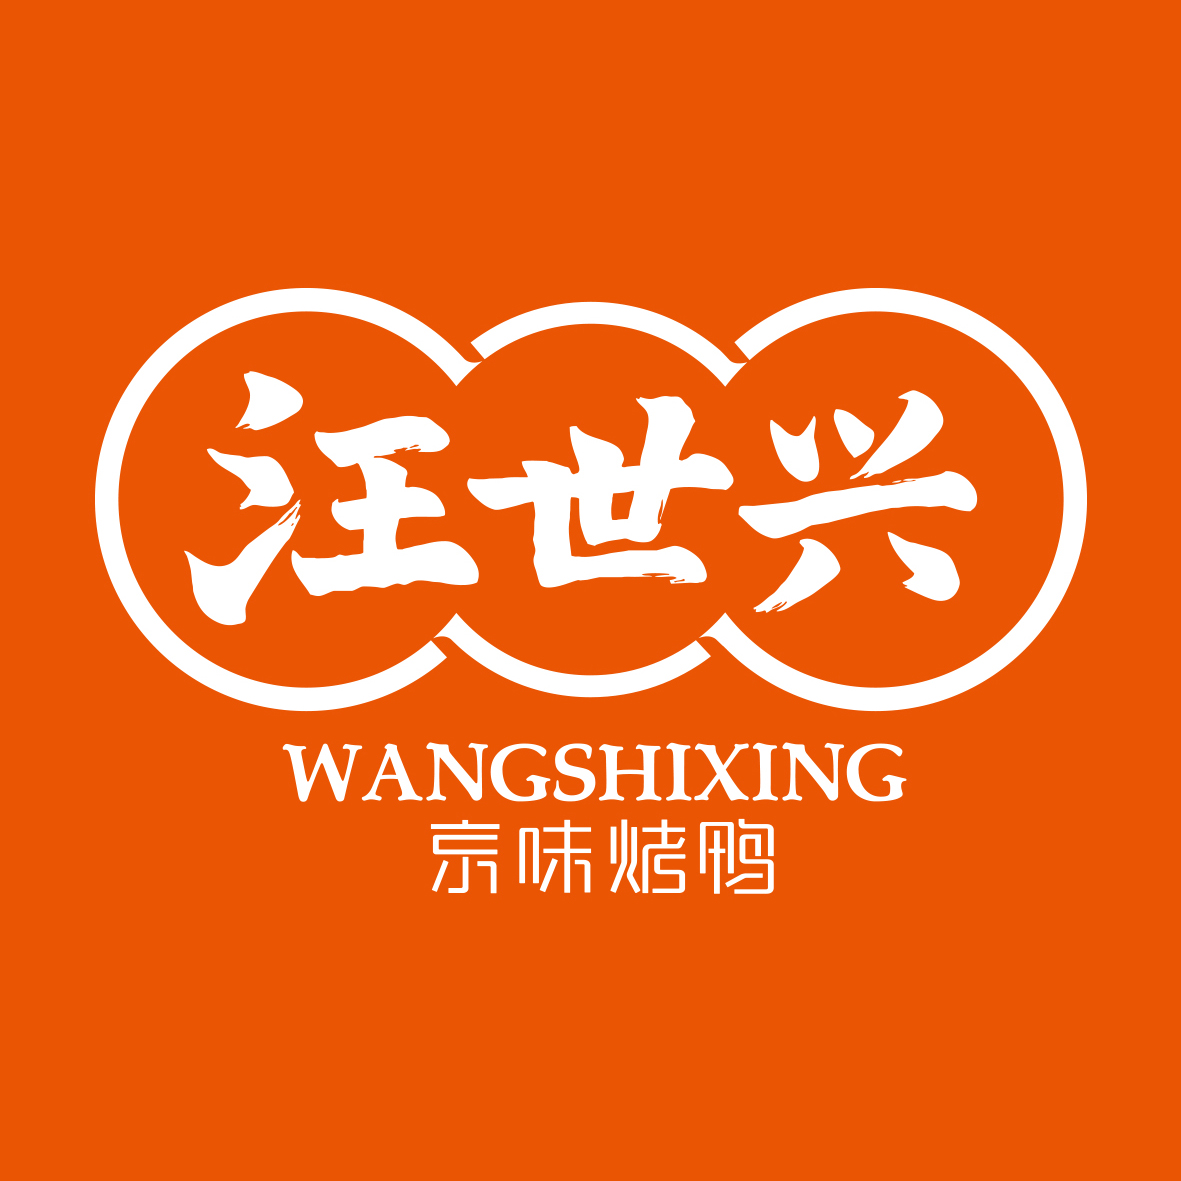 Wang Shixing Food